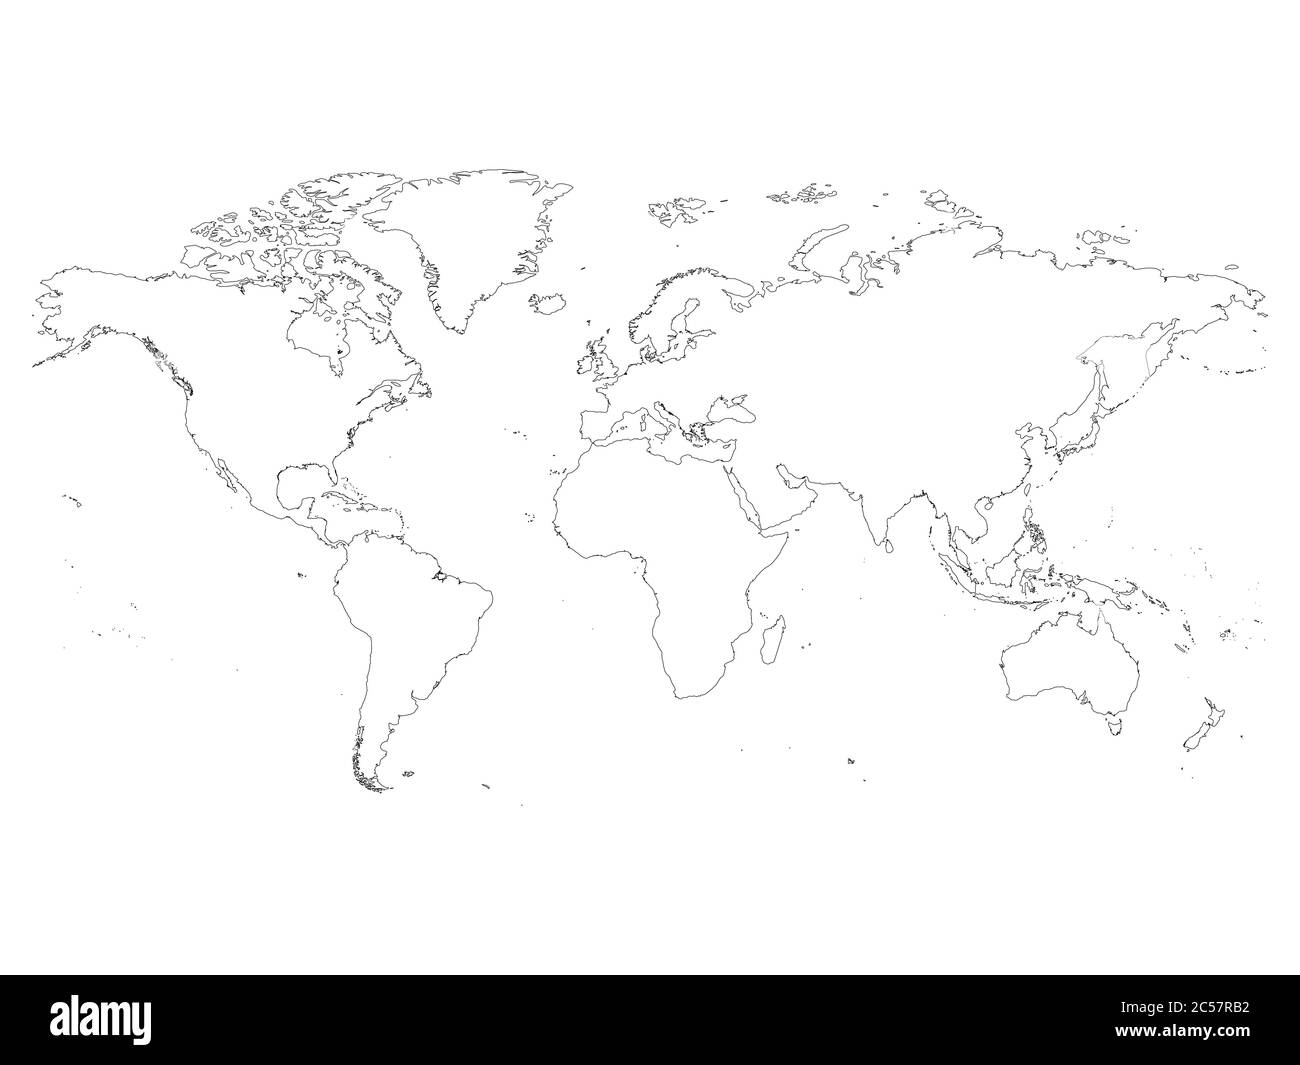 Detaillierte Darstellung der Weltkarte. Einfache dünne schwarze Vektorgrafiken auf weißem Hintergrund. Stock Vektor